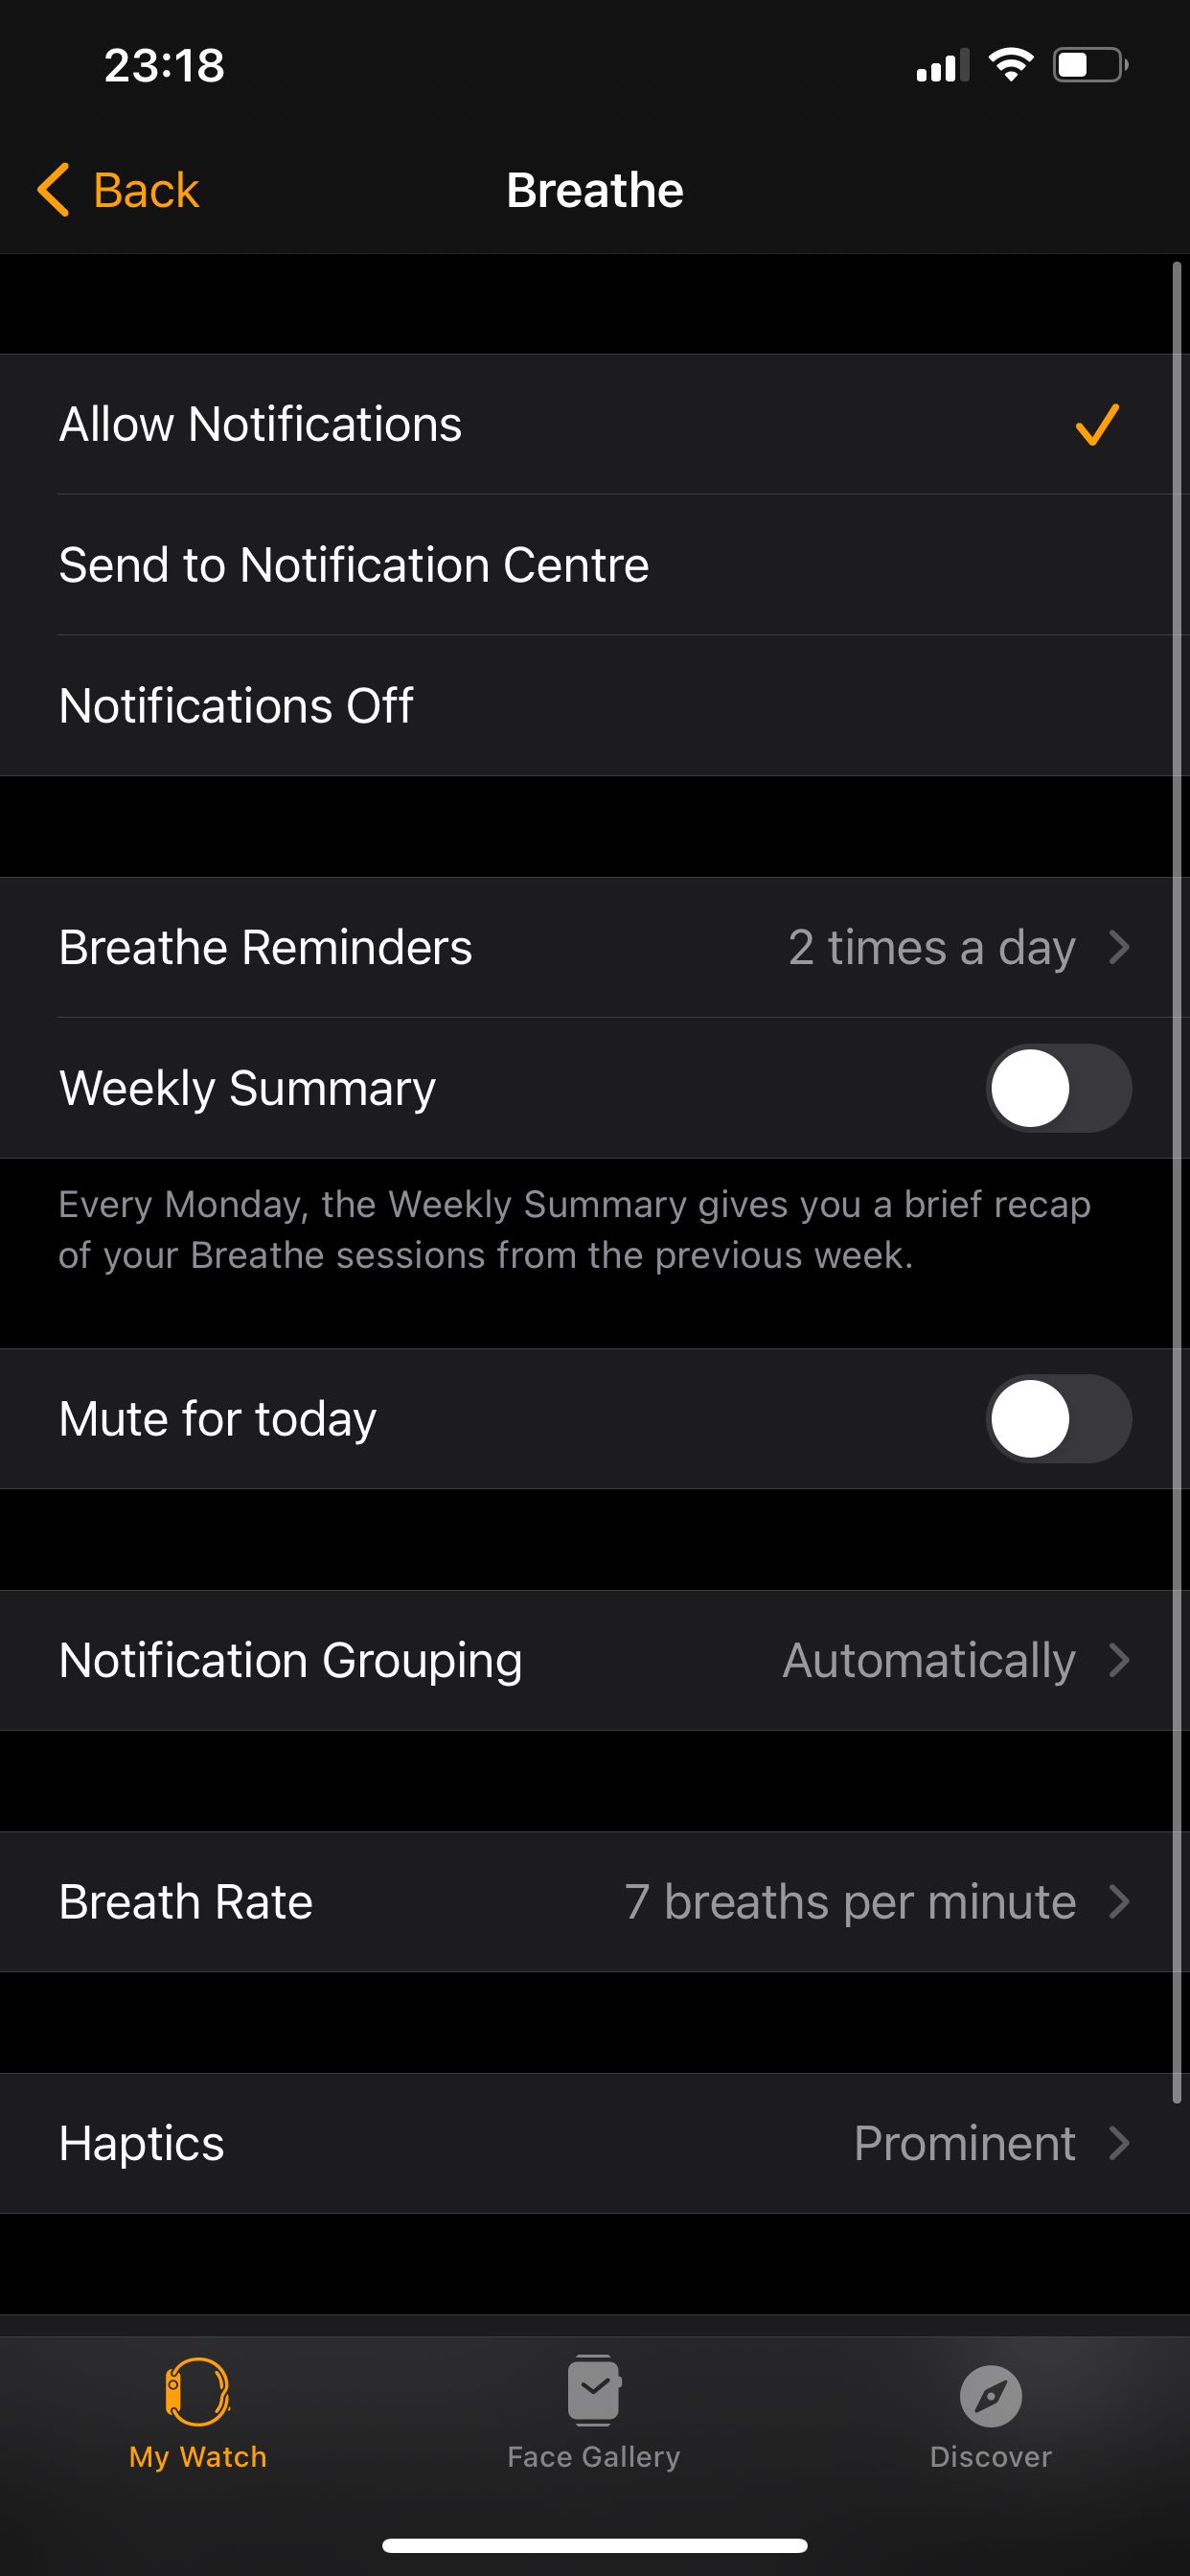 Breathe app settings in Apple Watch app.